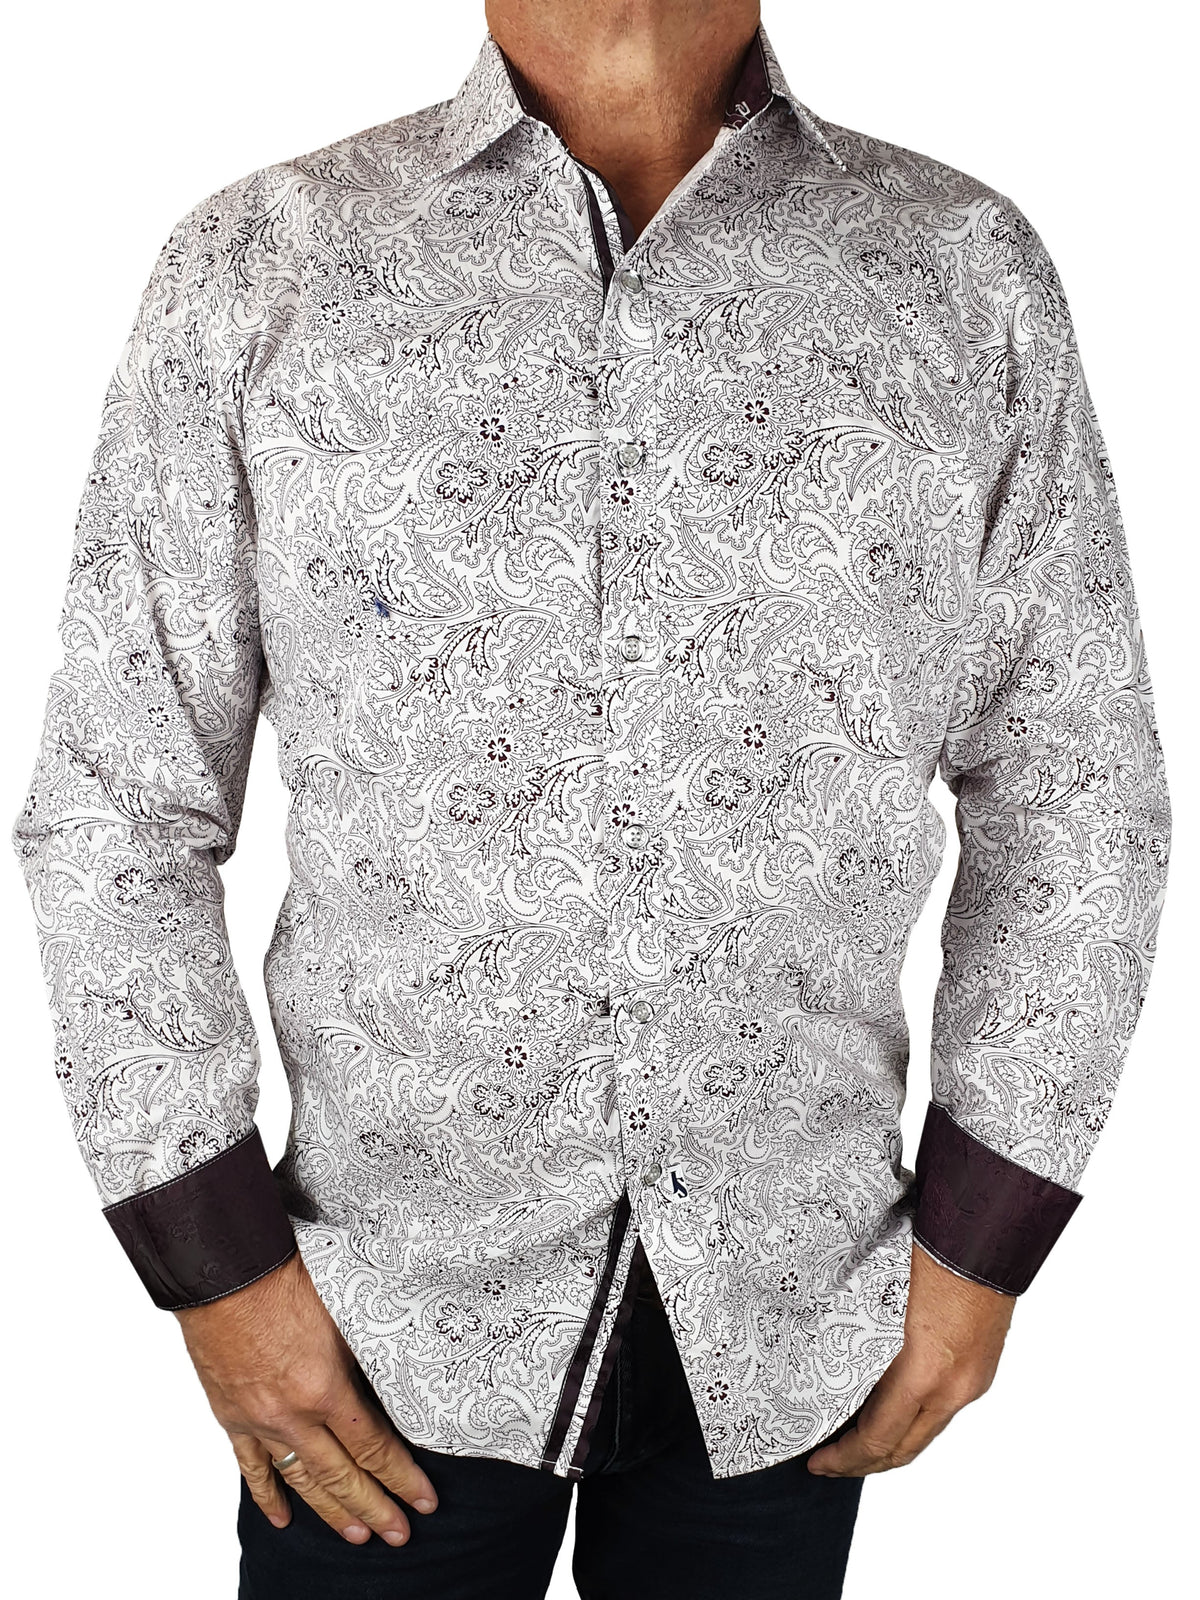 Shiraz Paisley Cotton L/S Shirt - White/Red